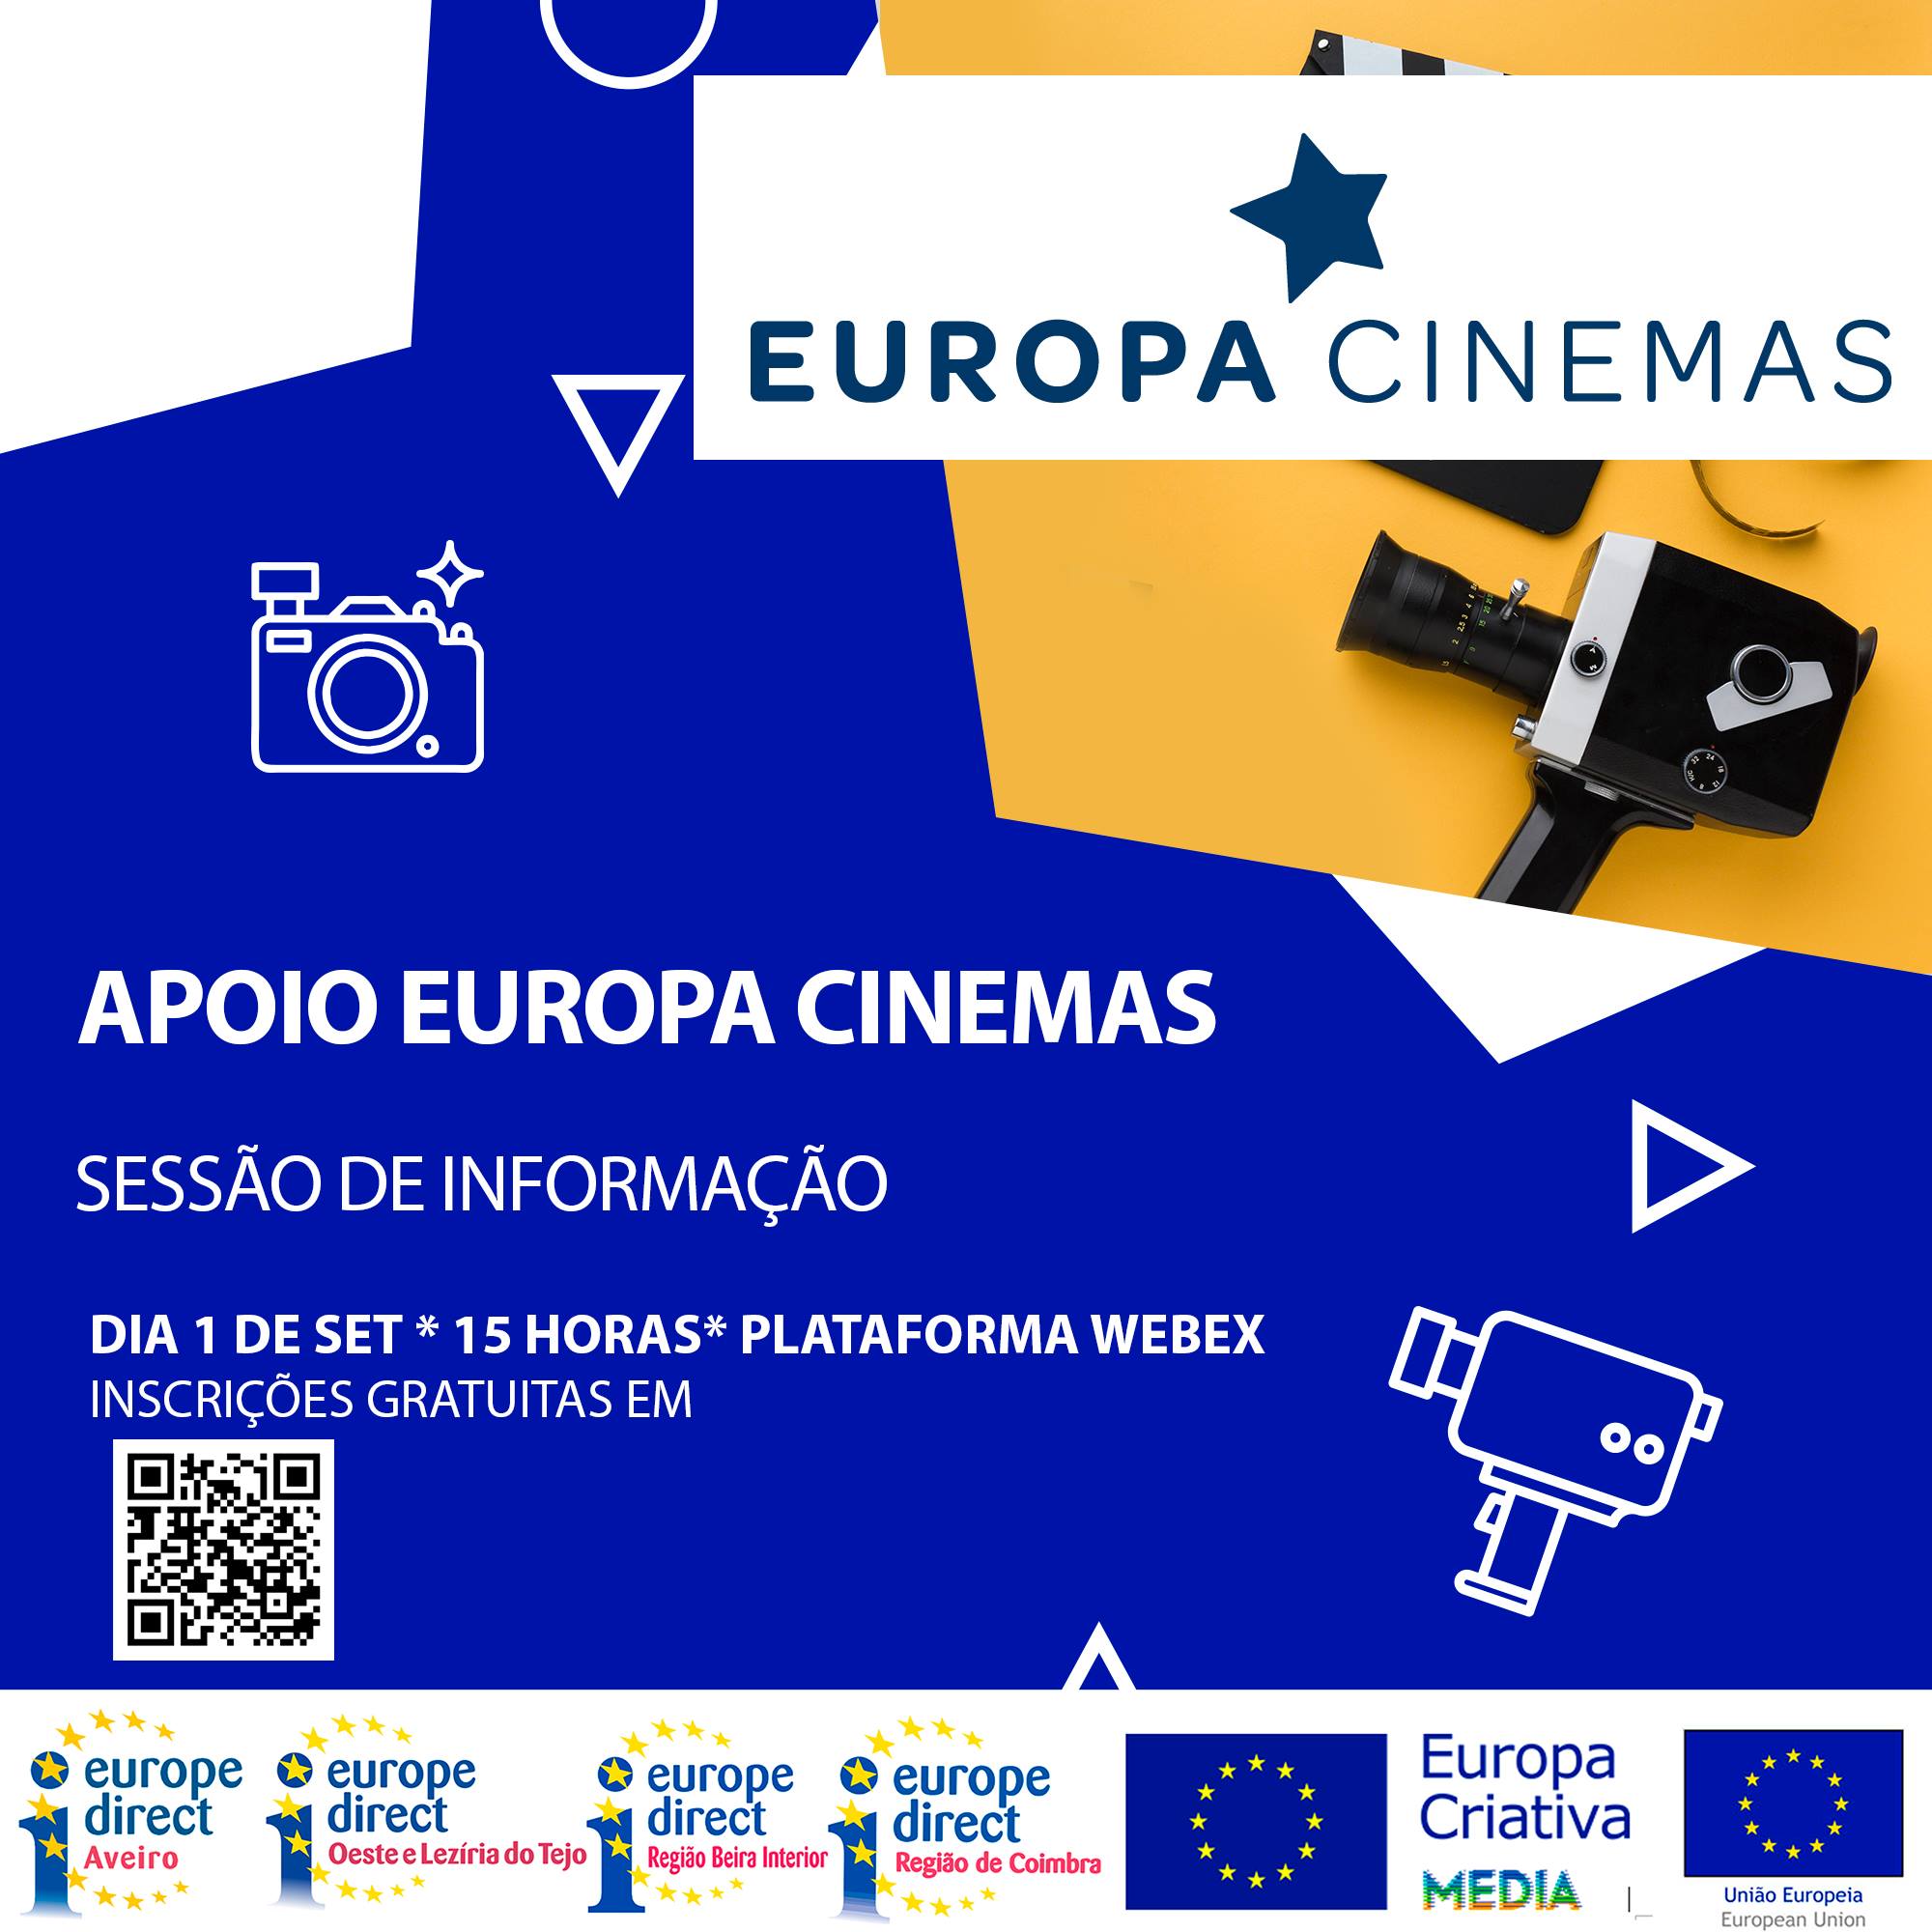 Sessão de esclarecimento sobre Apoio Europa Cinemas, 1 de Setembro, 15h